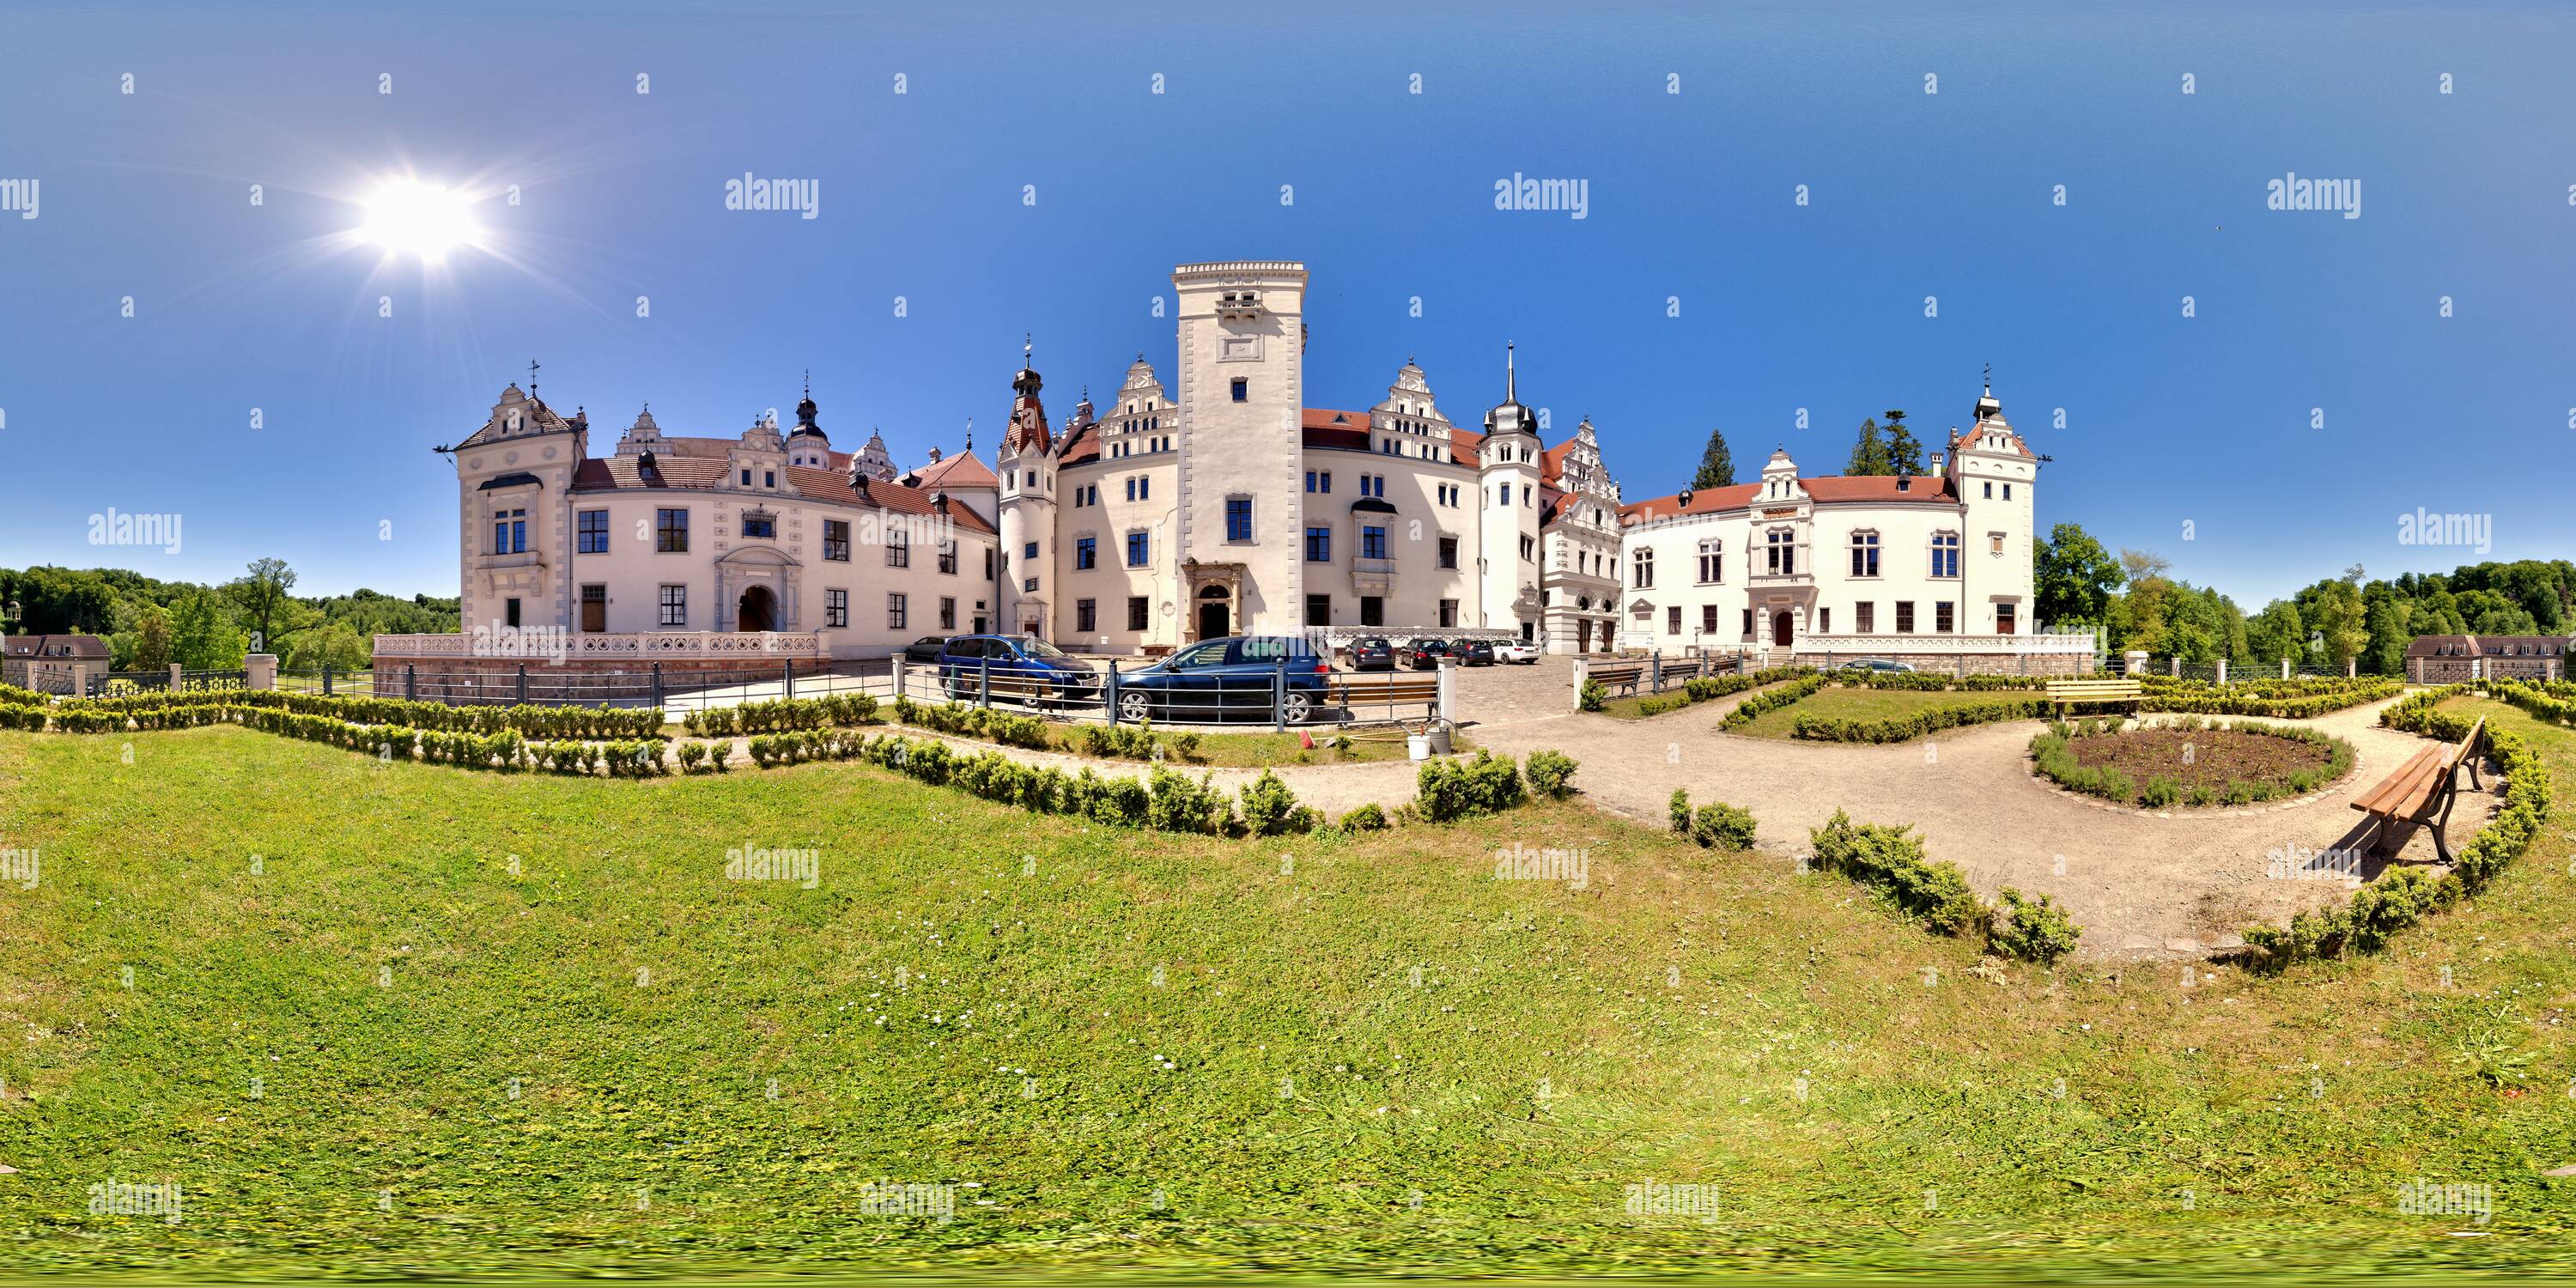 360 degree panoramic view of Schloss Boitzenburg 2